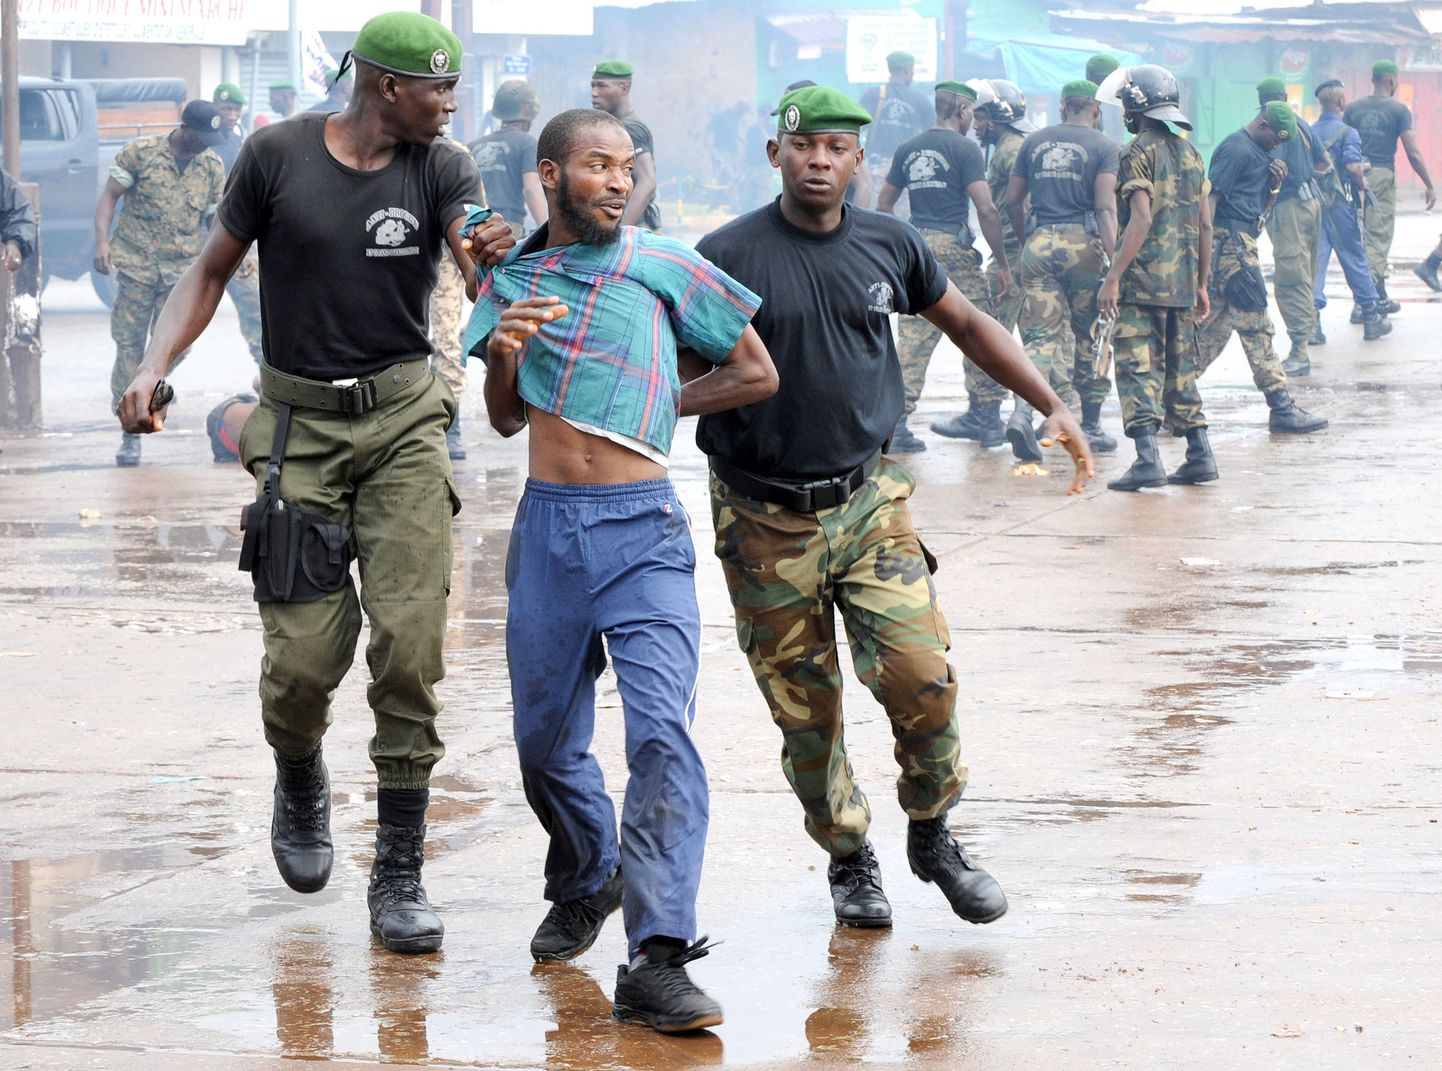 Guinea politsei arreteerimas protesteerijat.